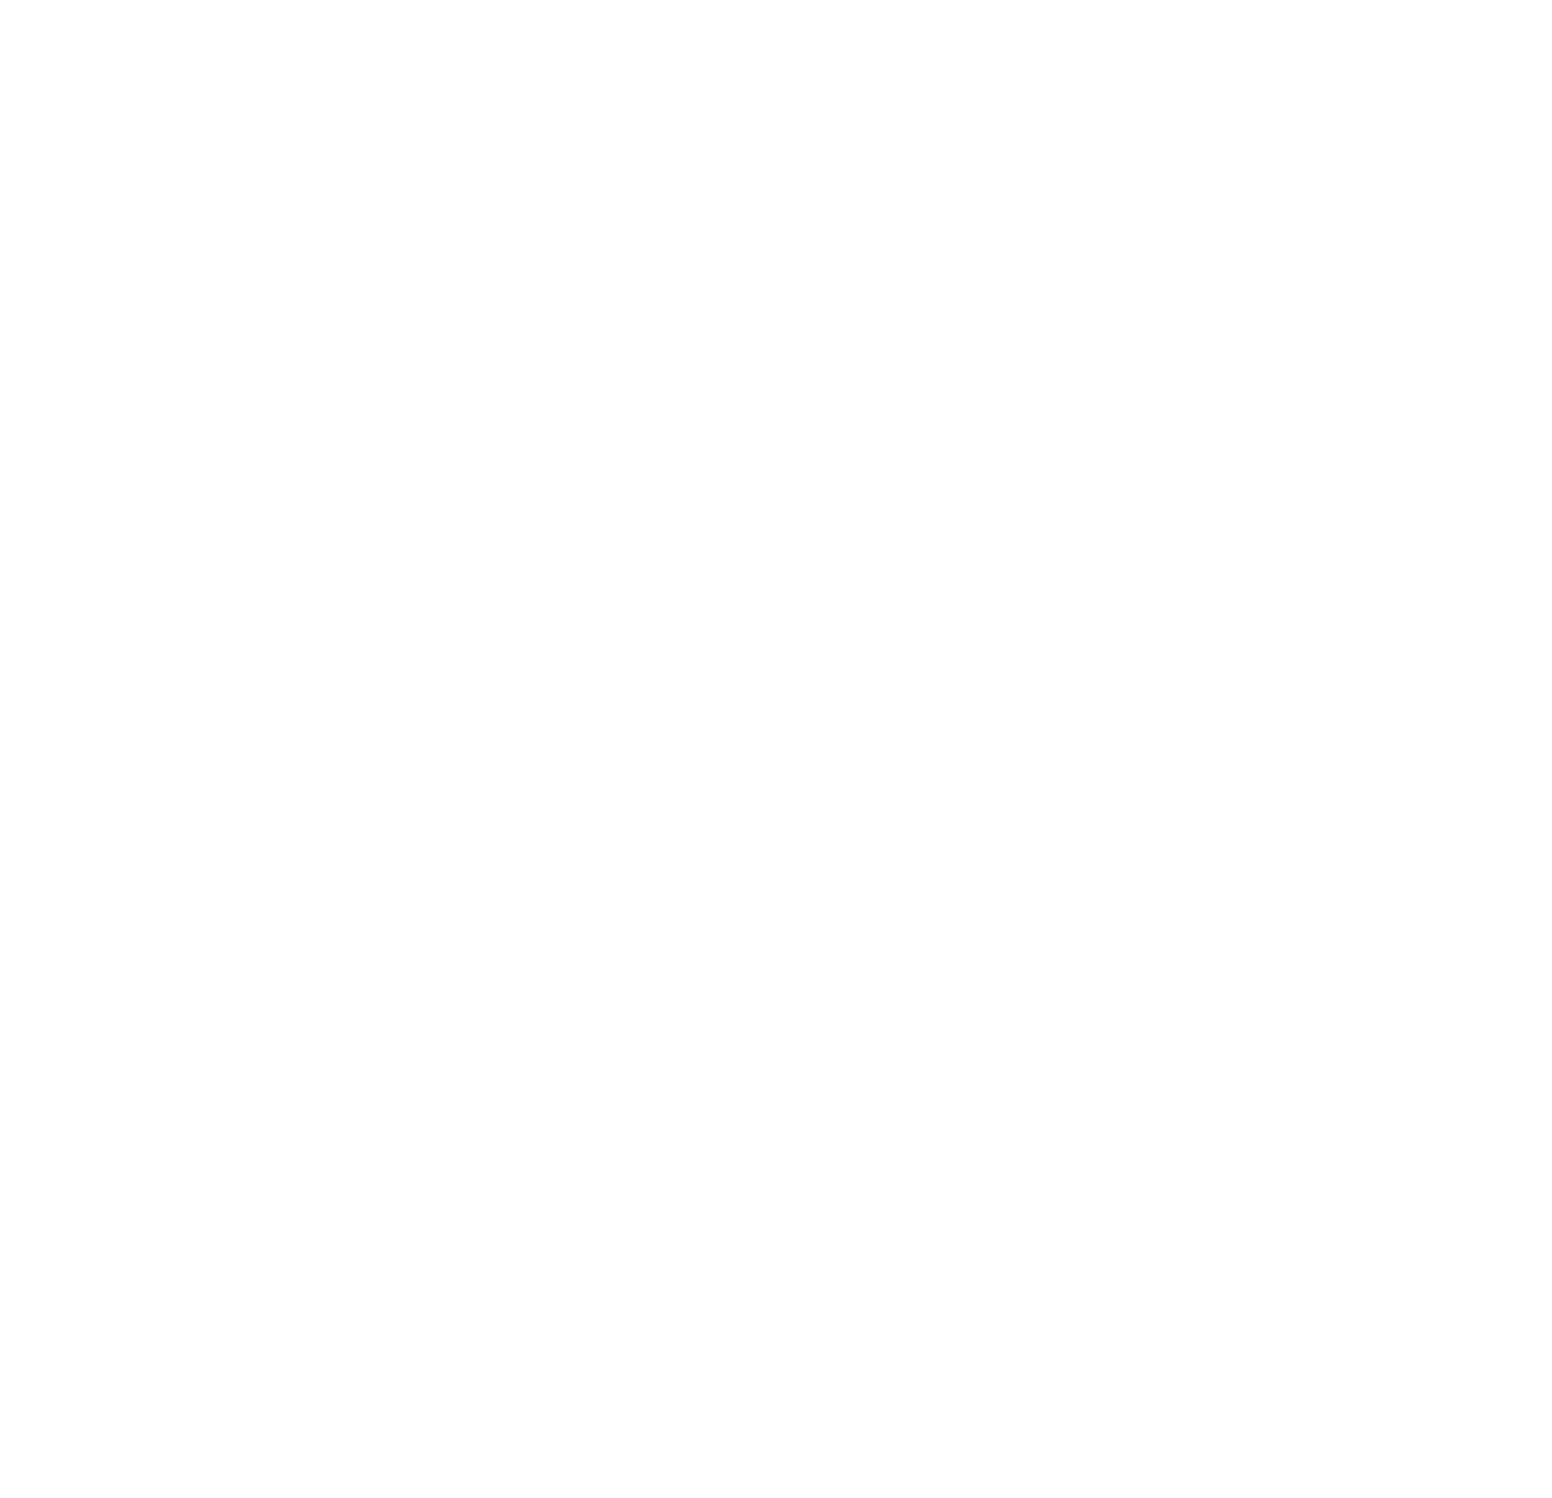 Prologis logo for dark backgrounds (transparent PNG)